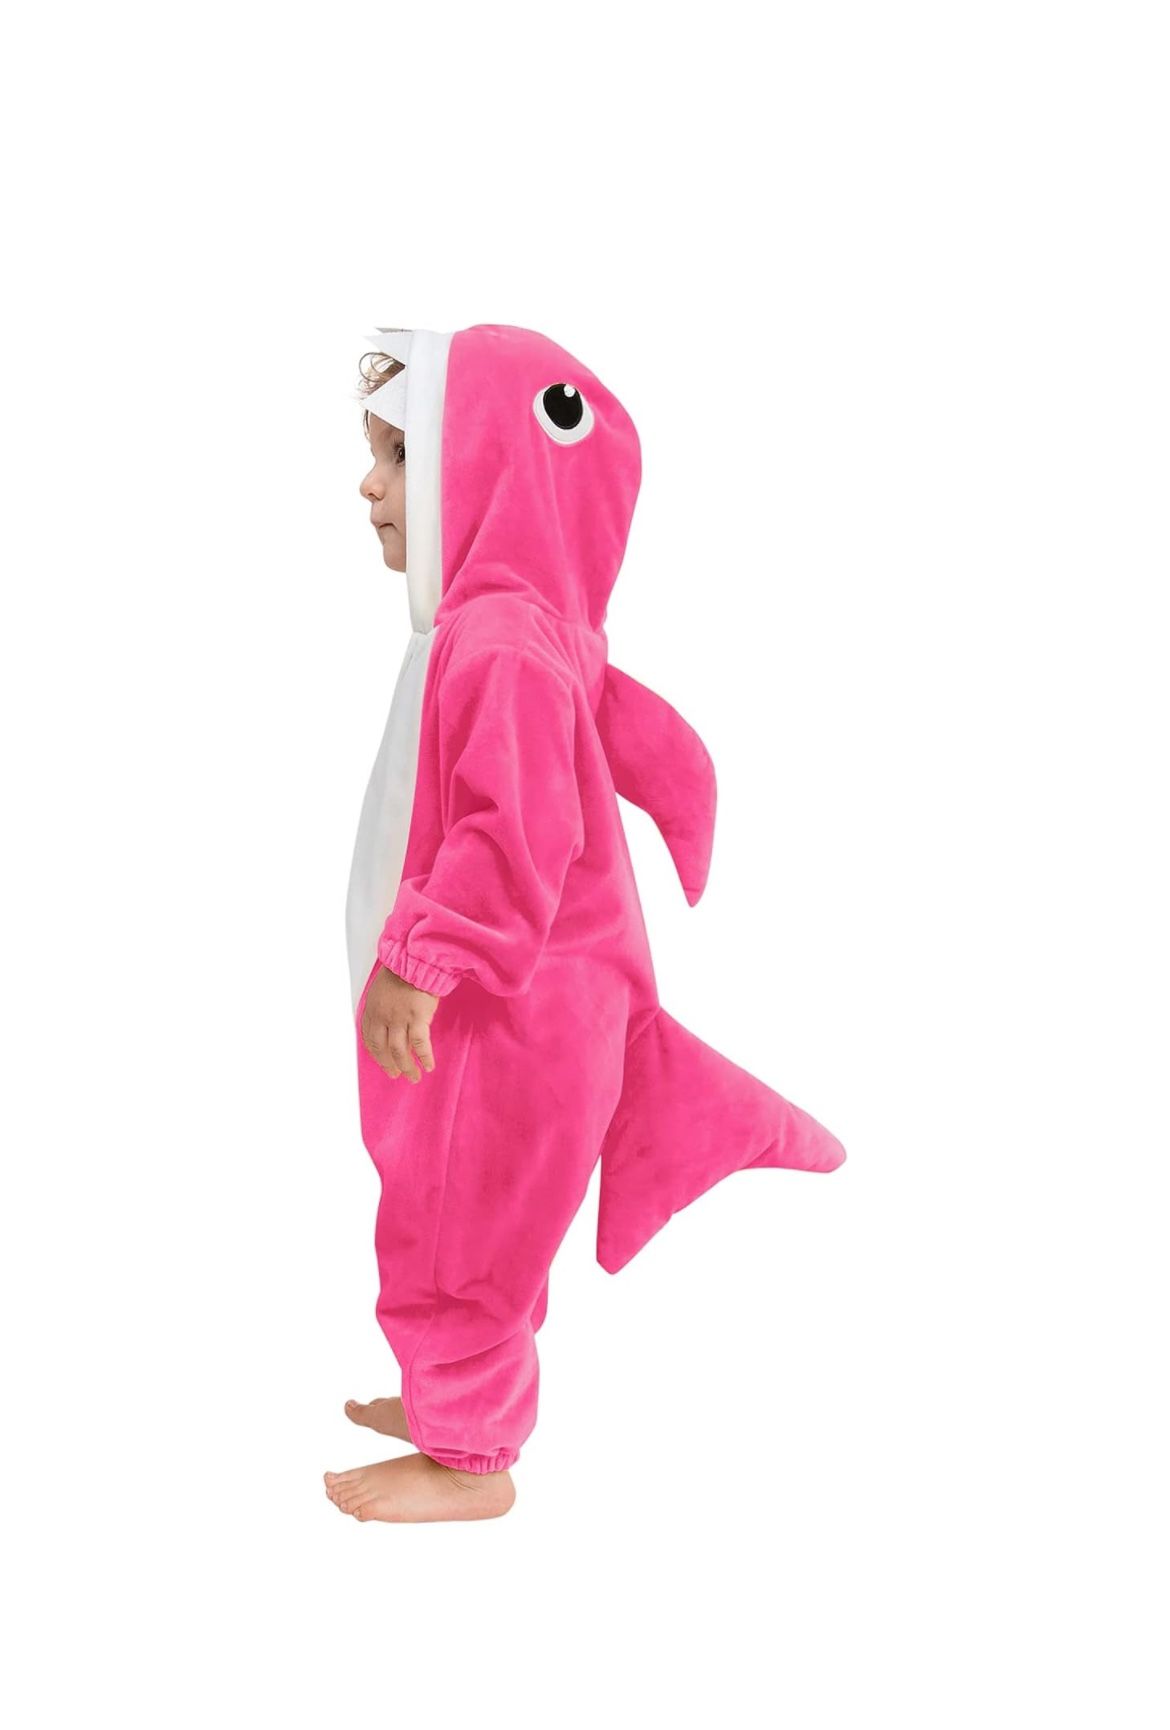 Baby Shark Costume (2T)